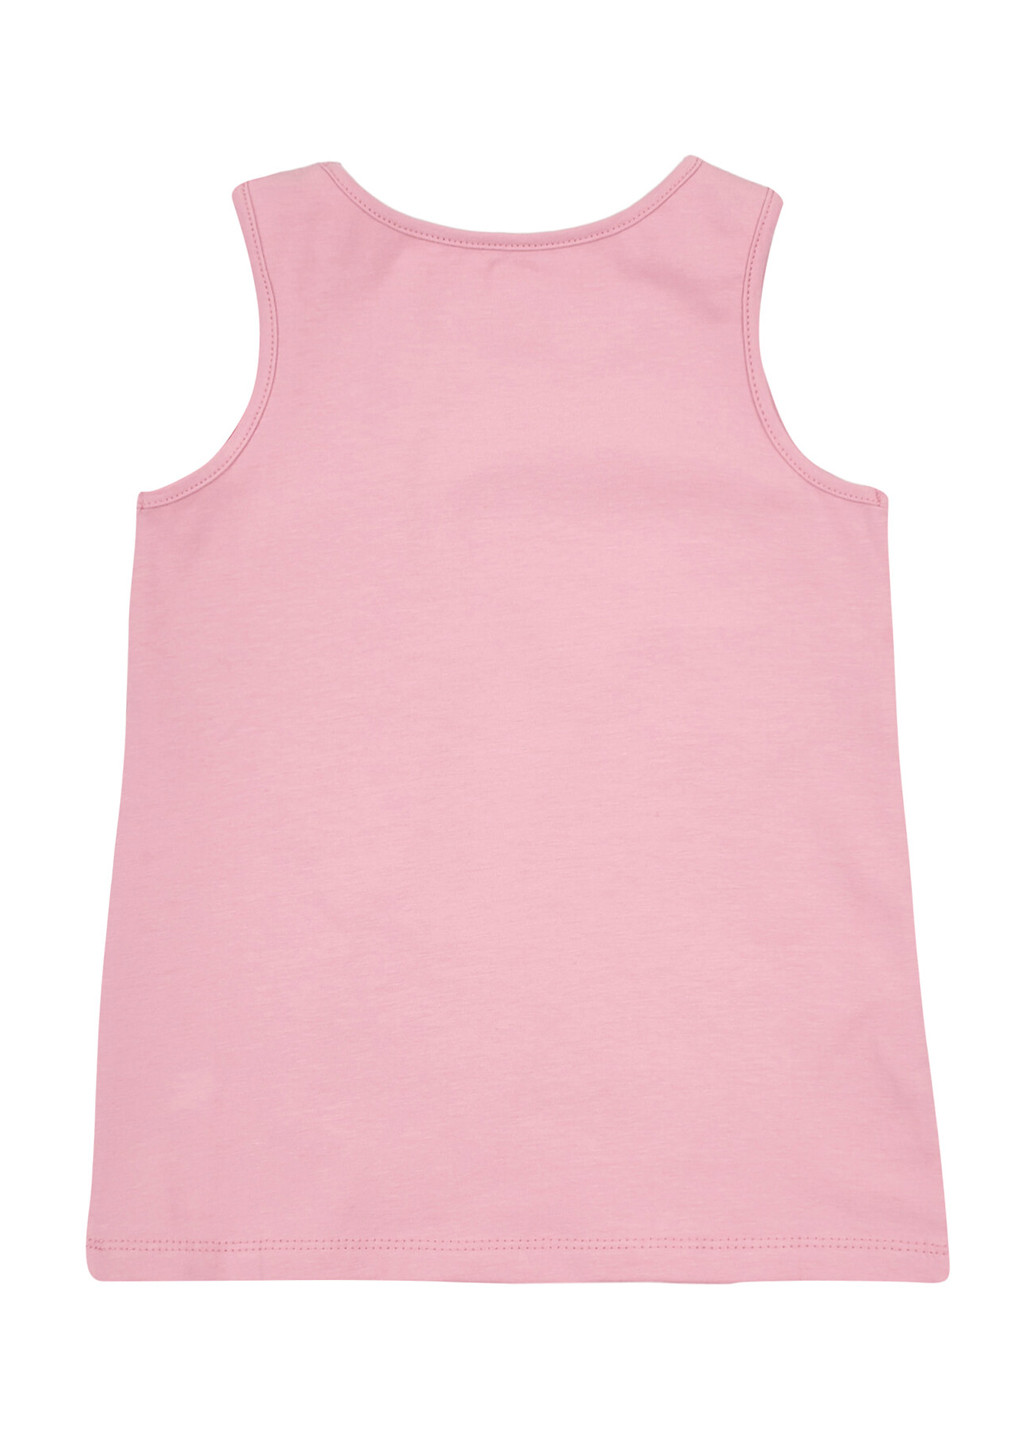 Розовый летний комплект (майка, футболка) Z16